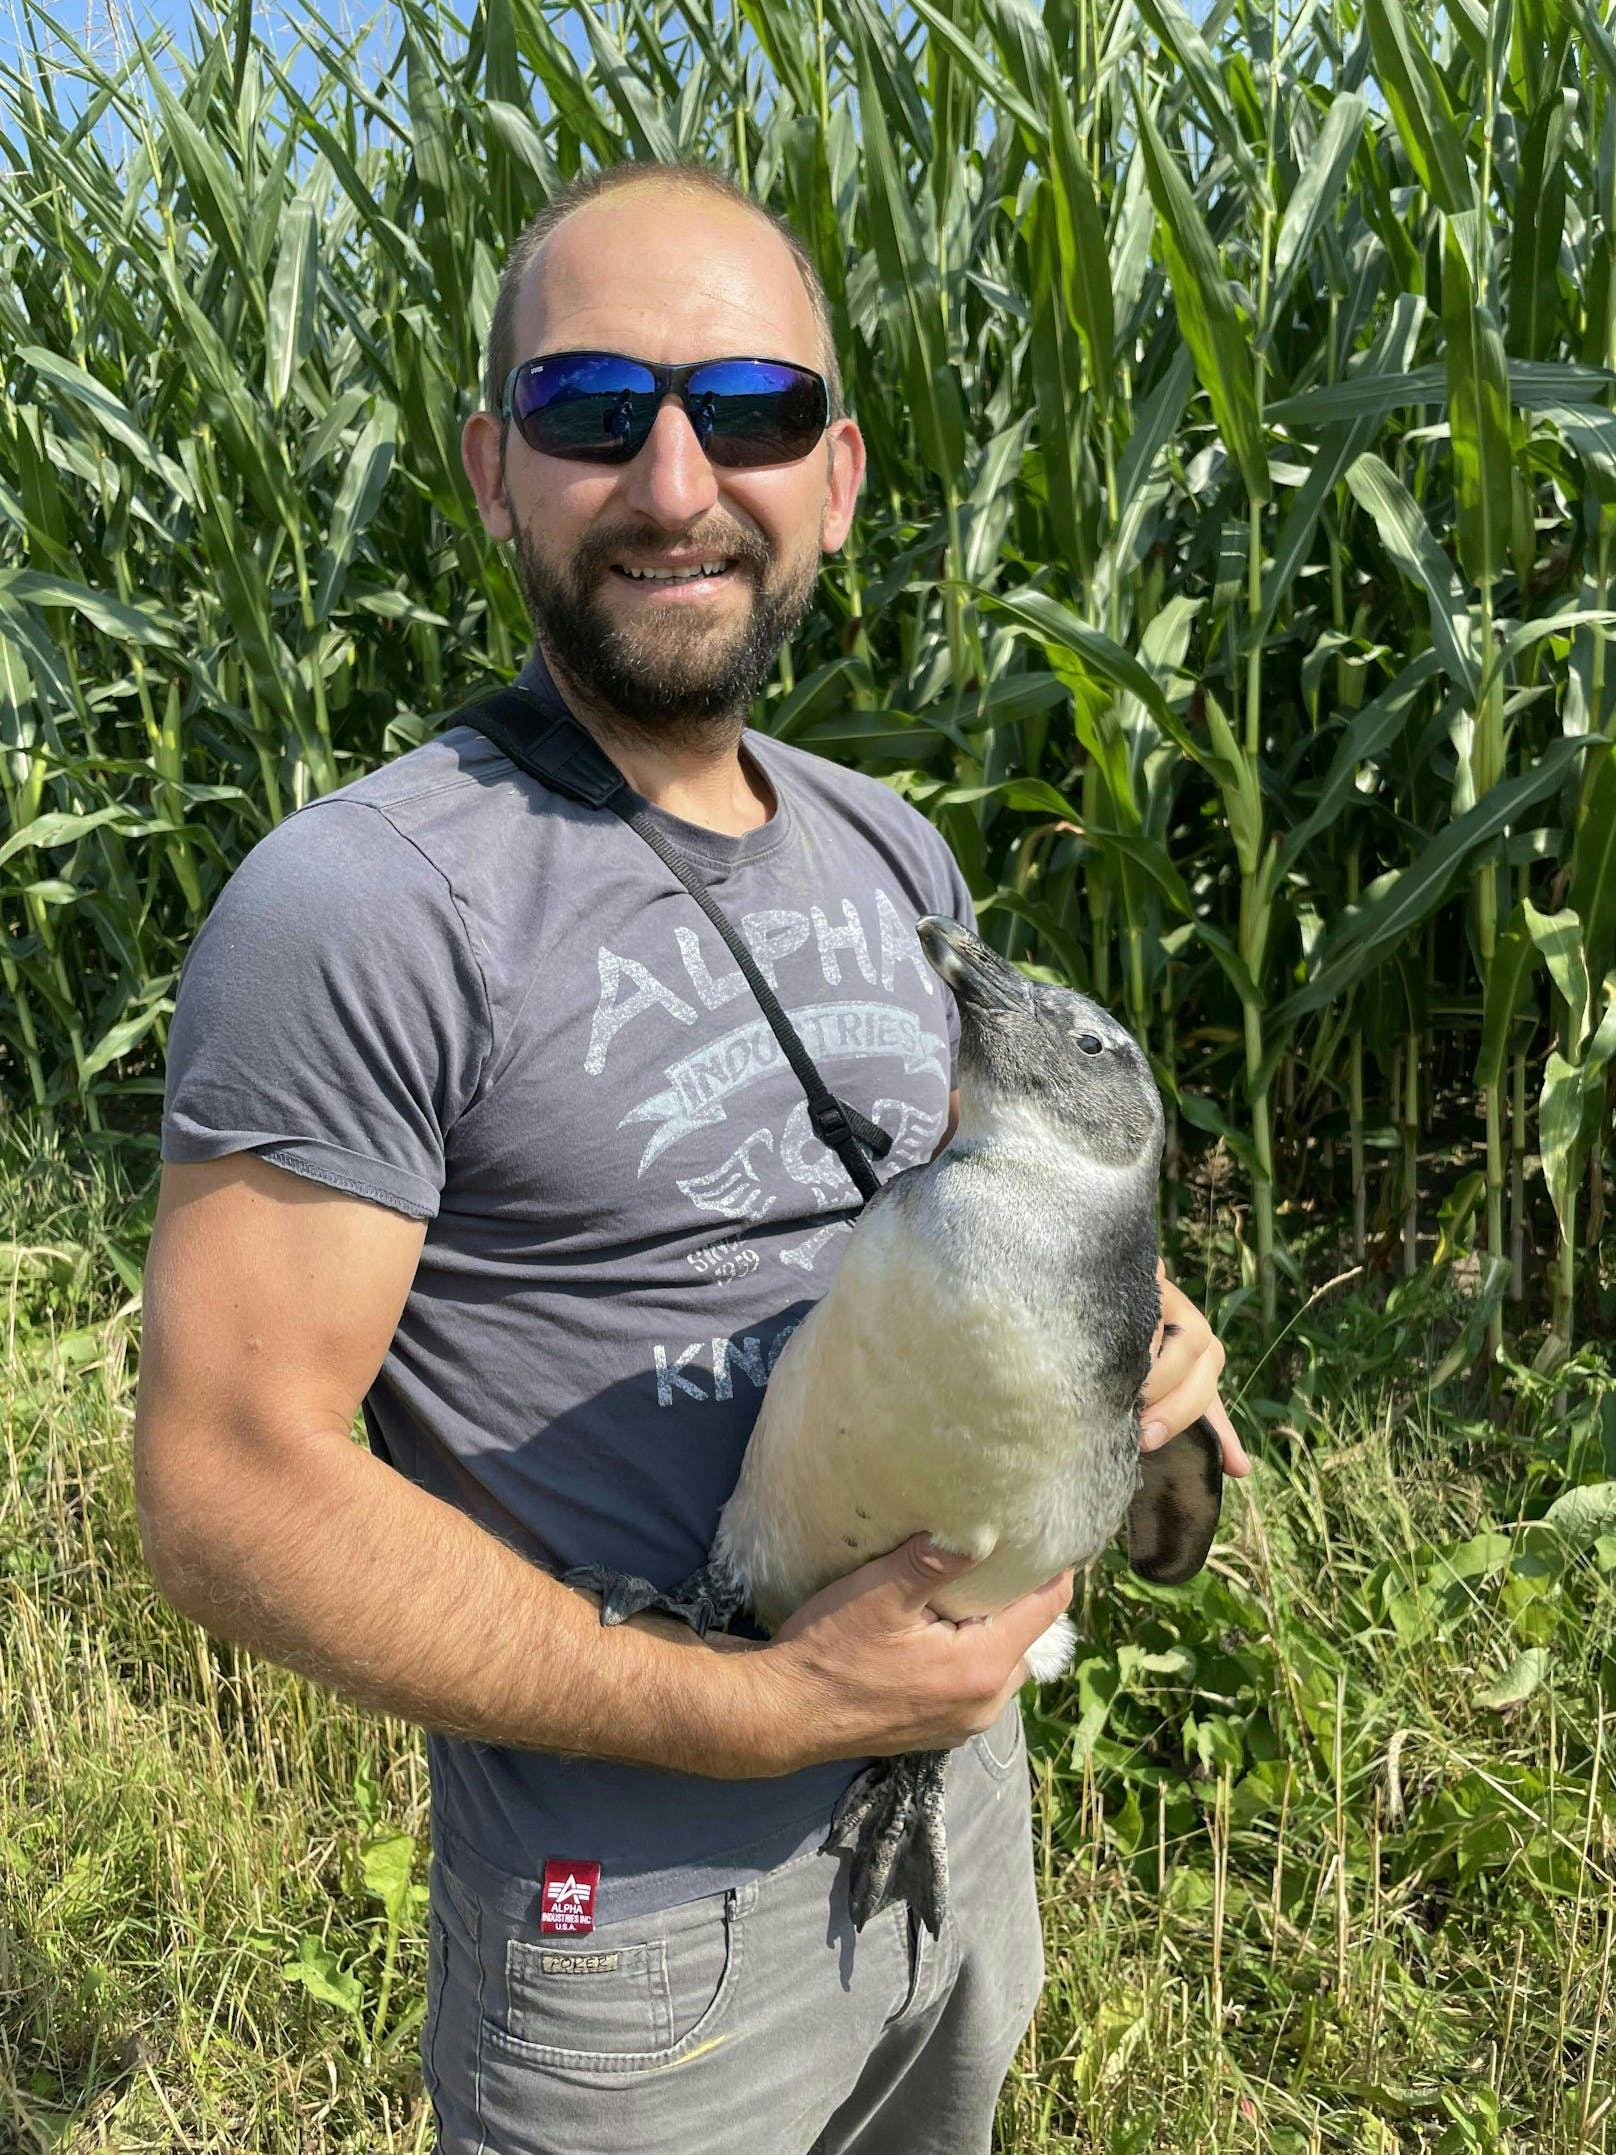 Tierpfleger Andreas Gfrerer war natürlich glücklich, seinen kleinen Wasservogel wieder in Arme schließen zu können. Wie er raus kam? Keiner weiß es ... 